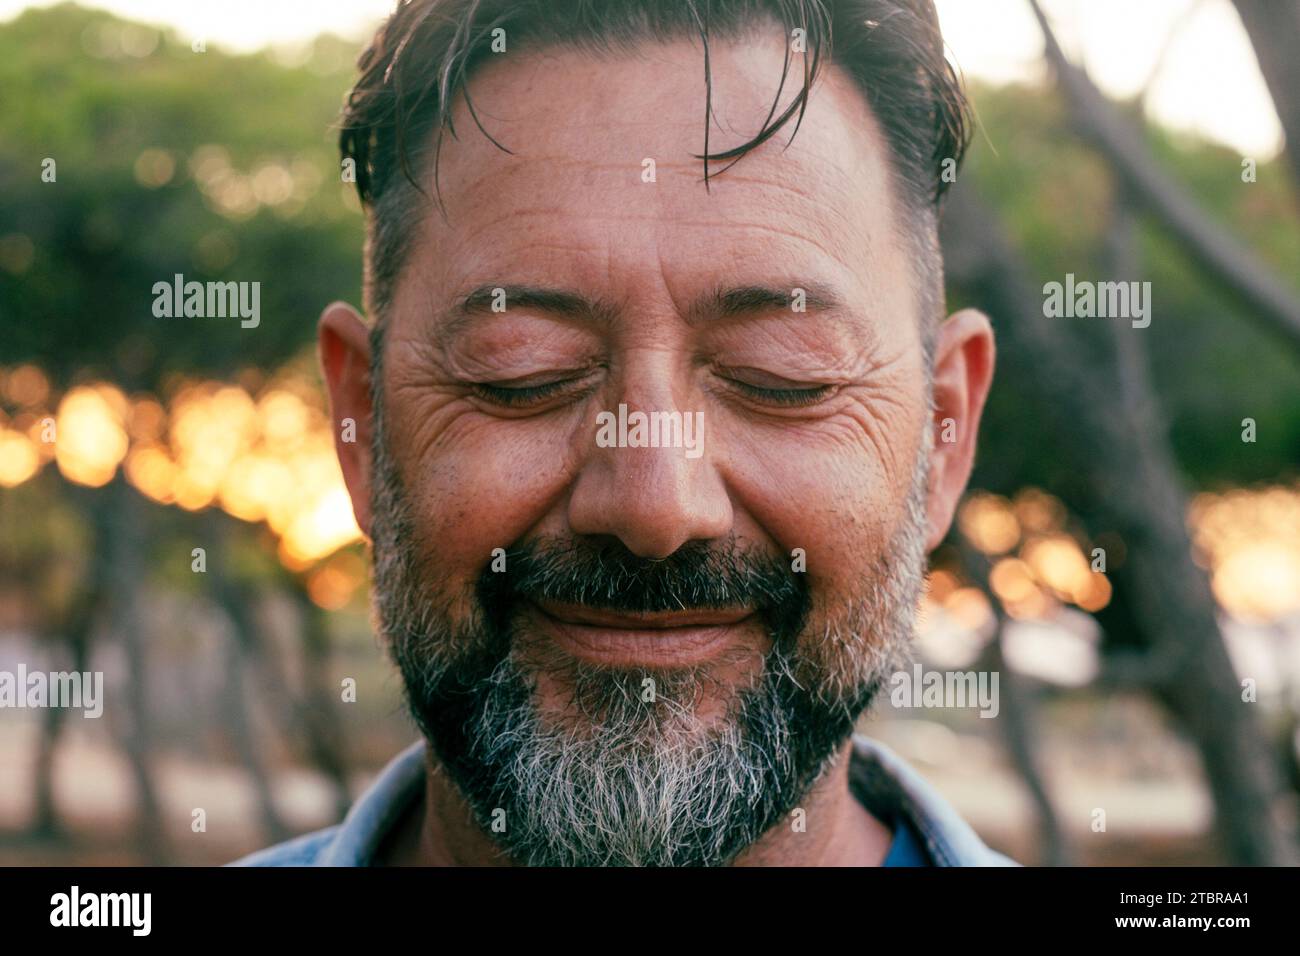 Nahaufnahme des Porträts eines Reifen Mannes mit Bart und geschlossenen Augen, der vor der Kamera lächelt. Wohlbefinden und psychische Gesundheit Konzept Glück Lebensstil. Innenraumlebensbalancierung positiv. Erwachsene männliche Menschen in Outdoor-Freude Stockfoto